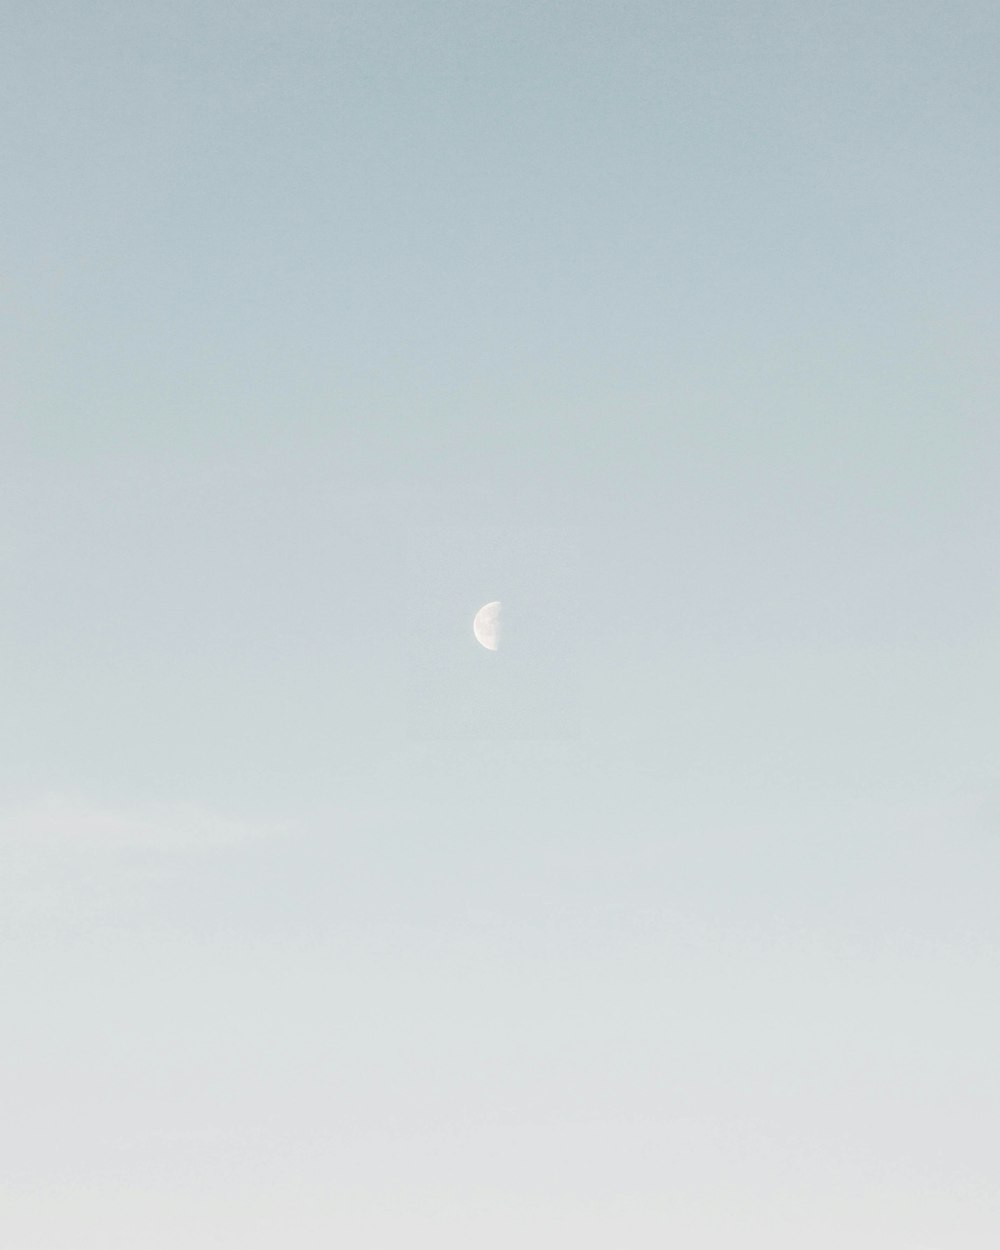 Photo de demi-lune pendant la journée